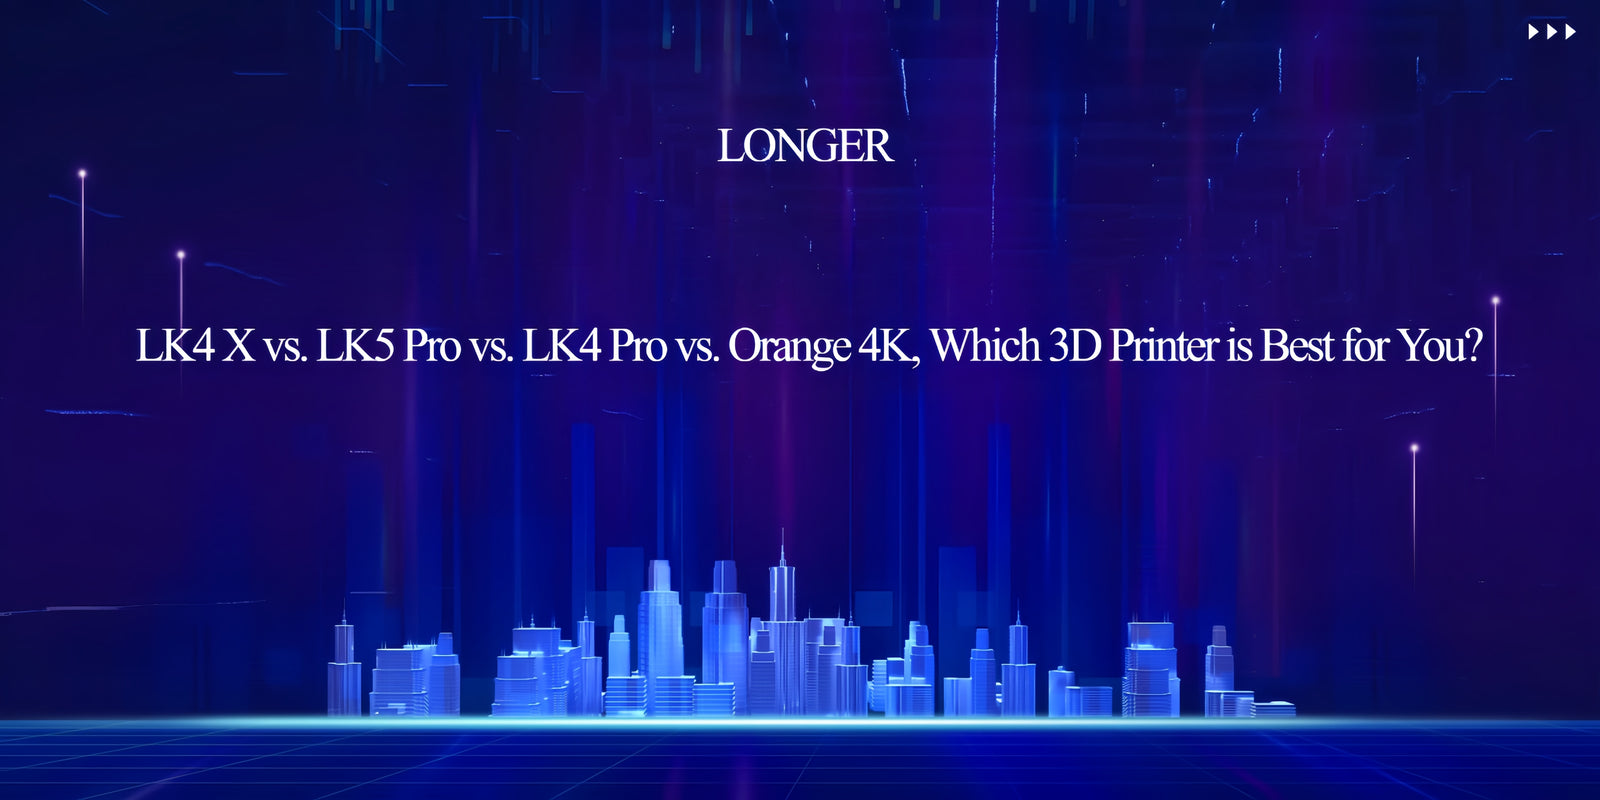 LONGER LK4 X vs. LK5 Pro vs. LK4 Pro vs. Orange 4K, Which 3D Printer is Best for You?